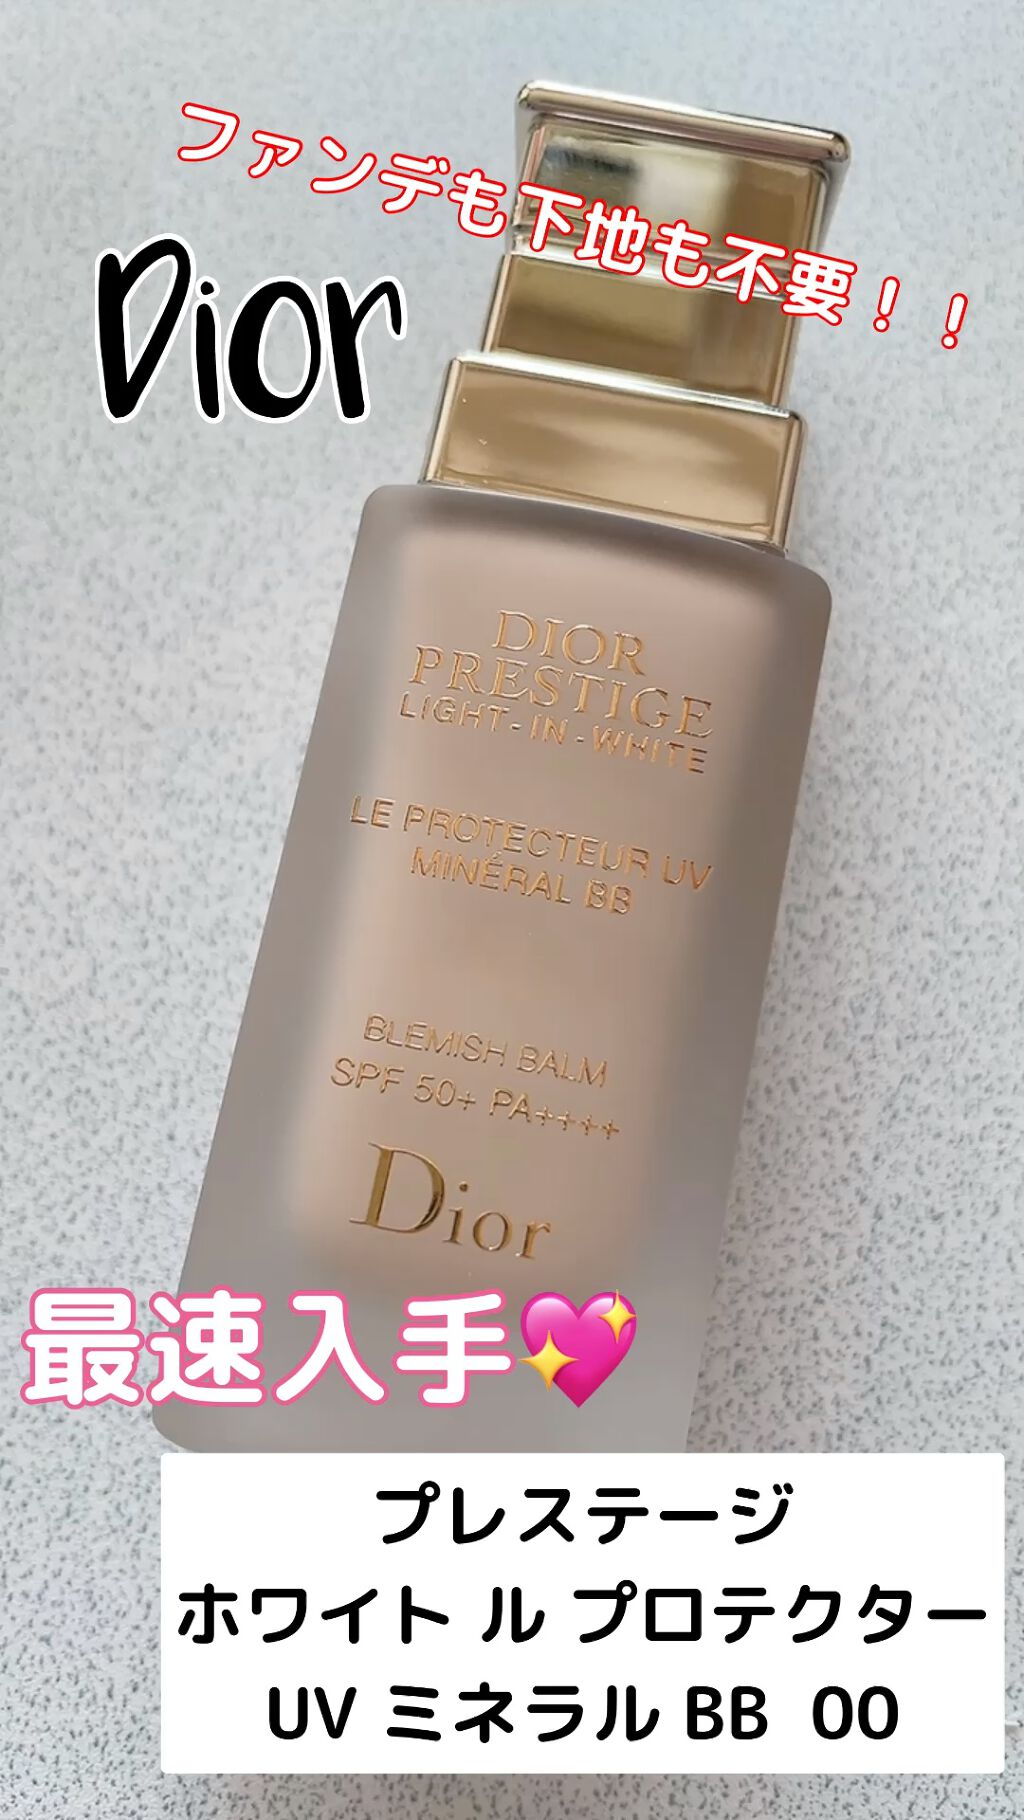 コスメ/美容Dior プレステージ ホワイト ル プロテクター UV ミネラル